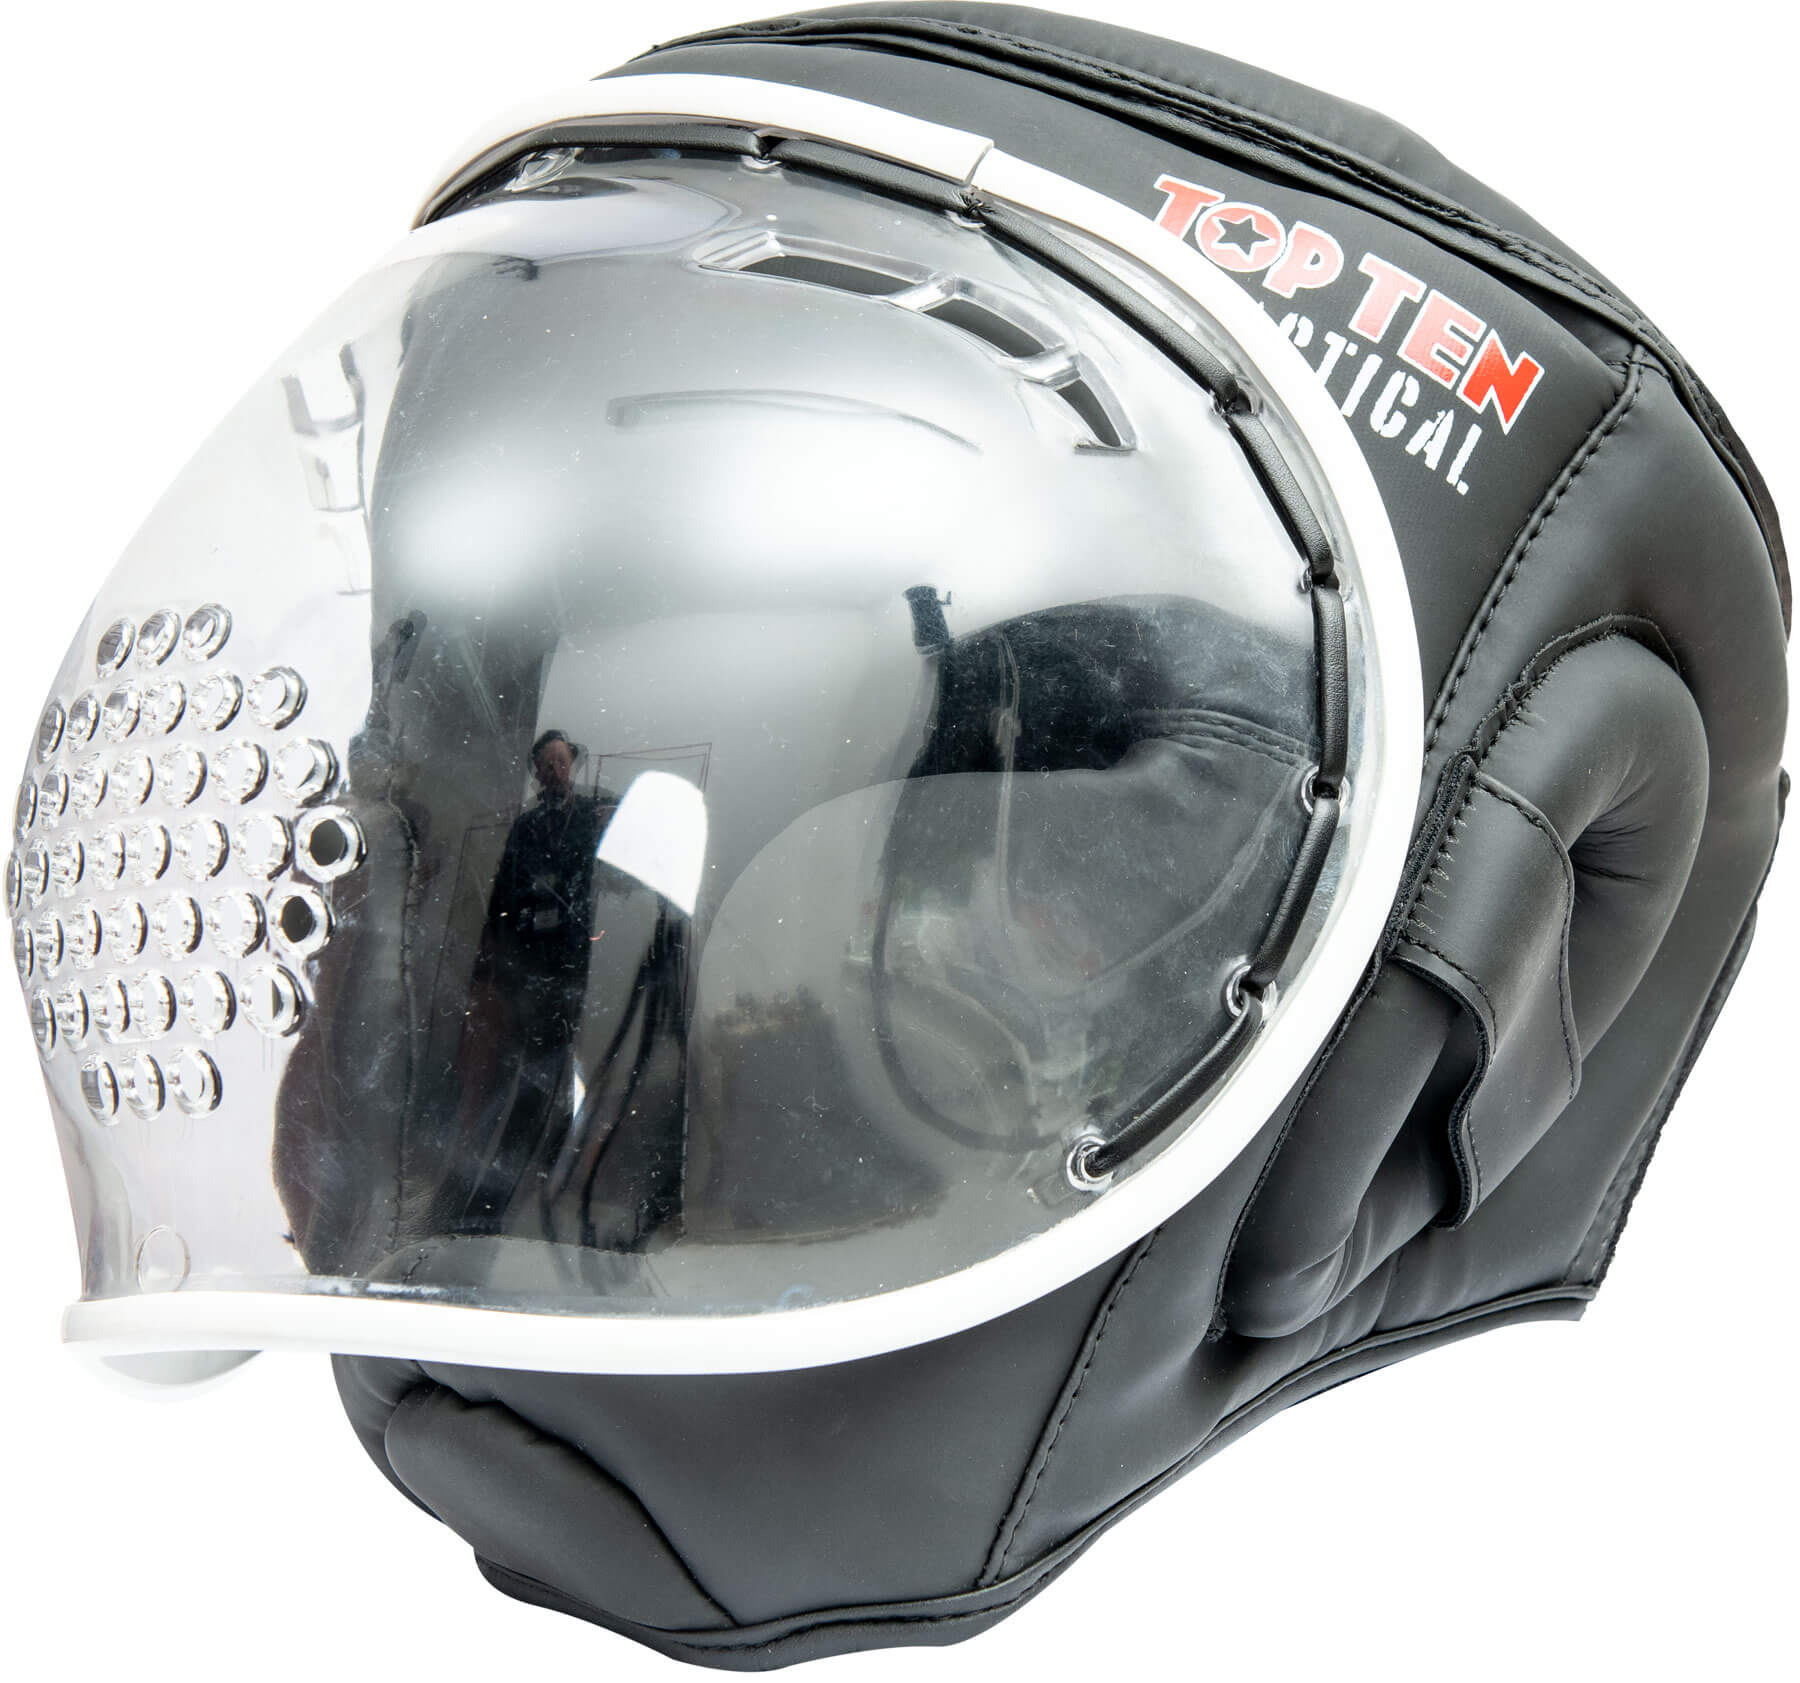 top-ten-helmet-body-armor-black-3335